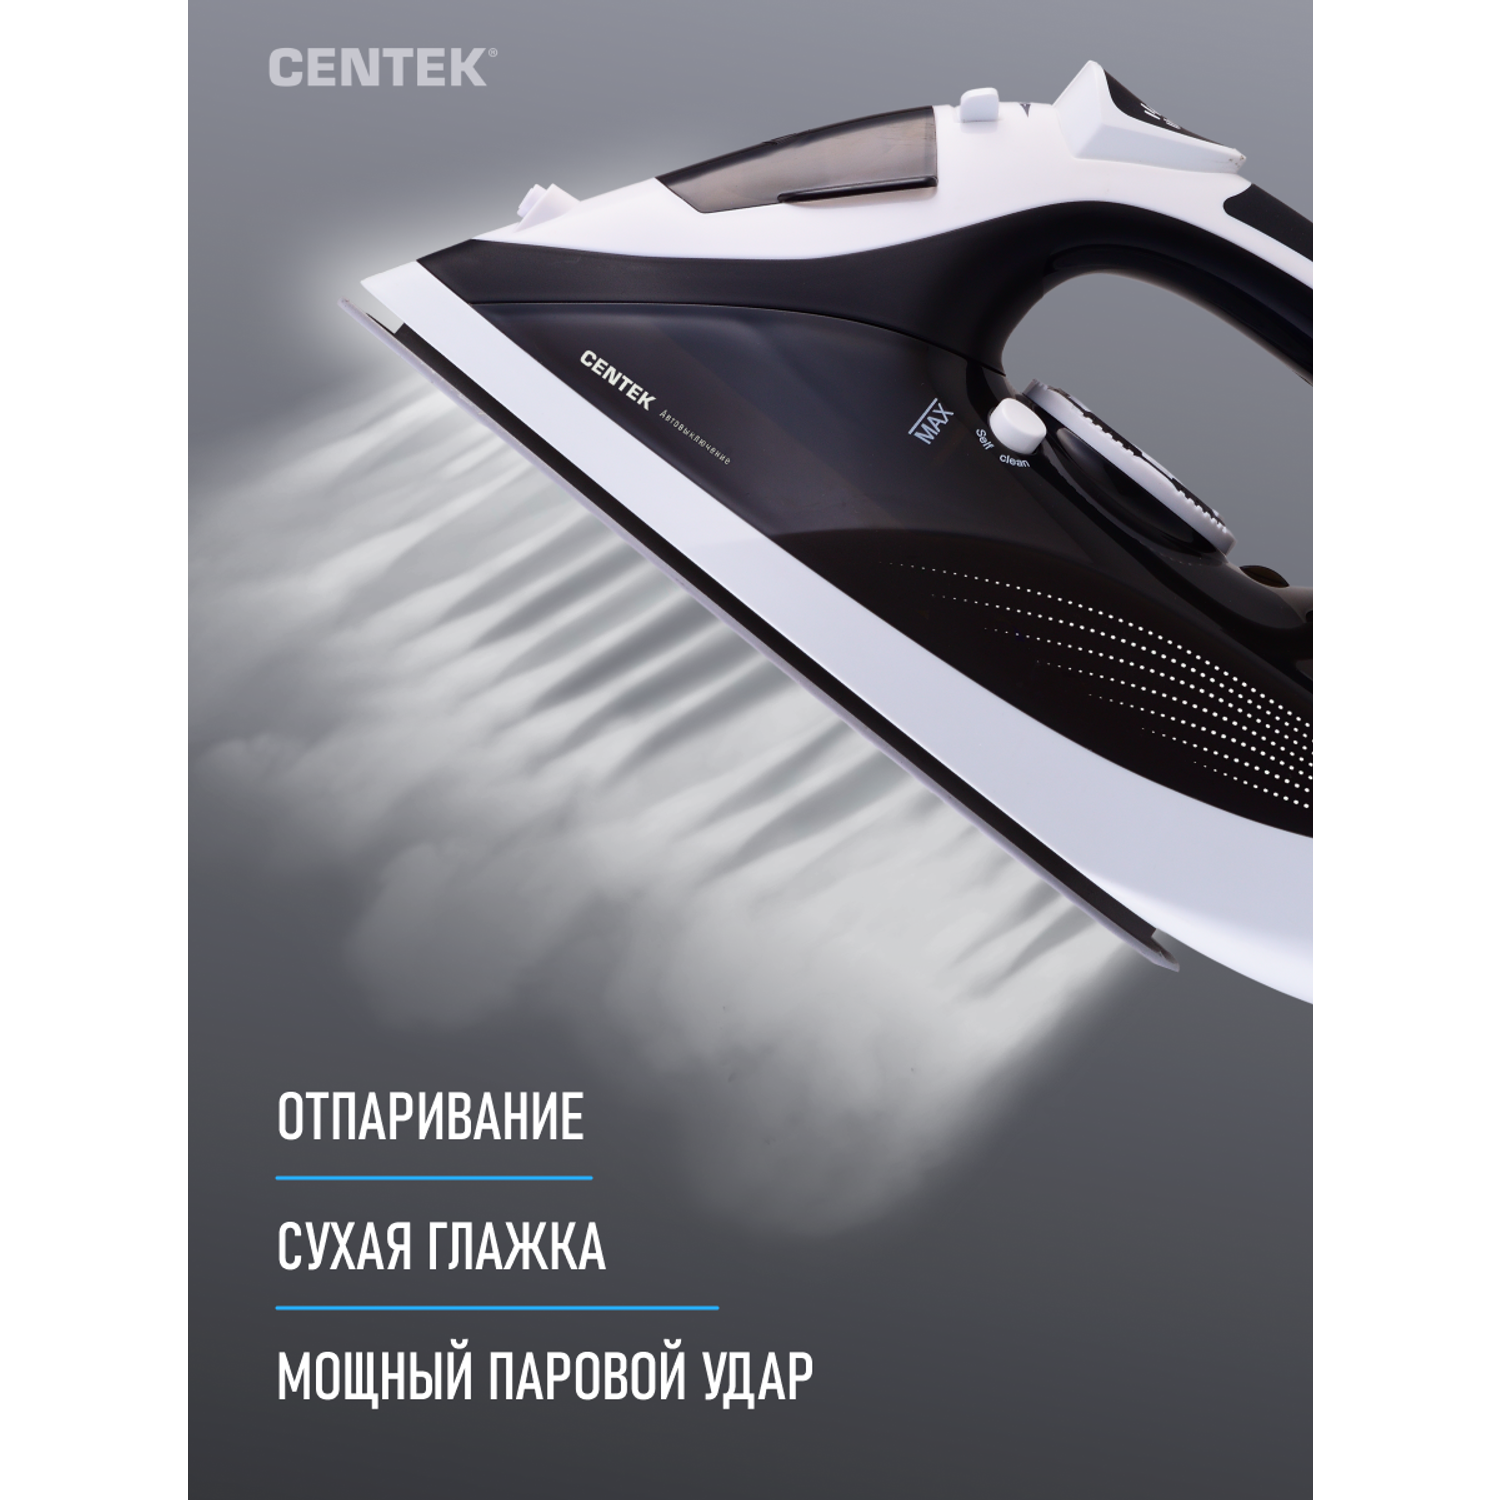 Утюг CENTEK CT-2317 черный керамическое покрытие подошвы автоотключение капля стоп самоочистка шнур 2м - фото 2